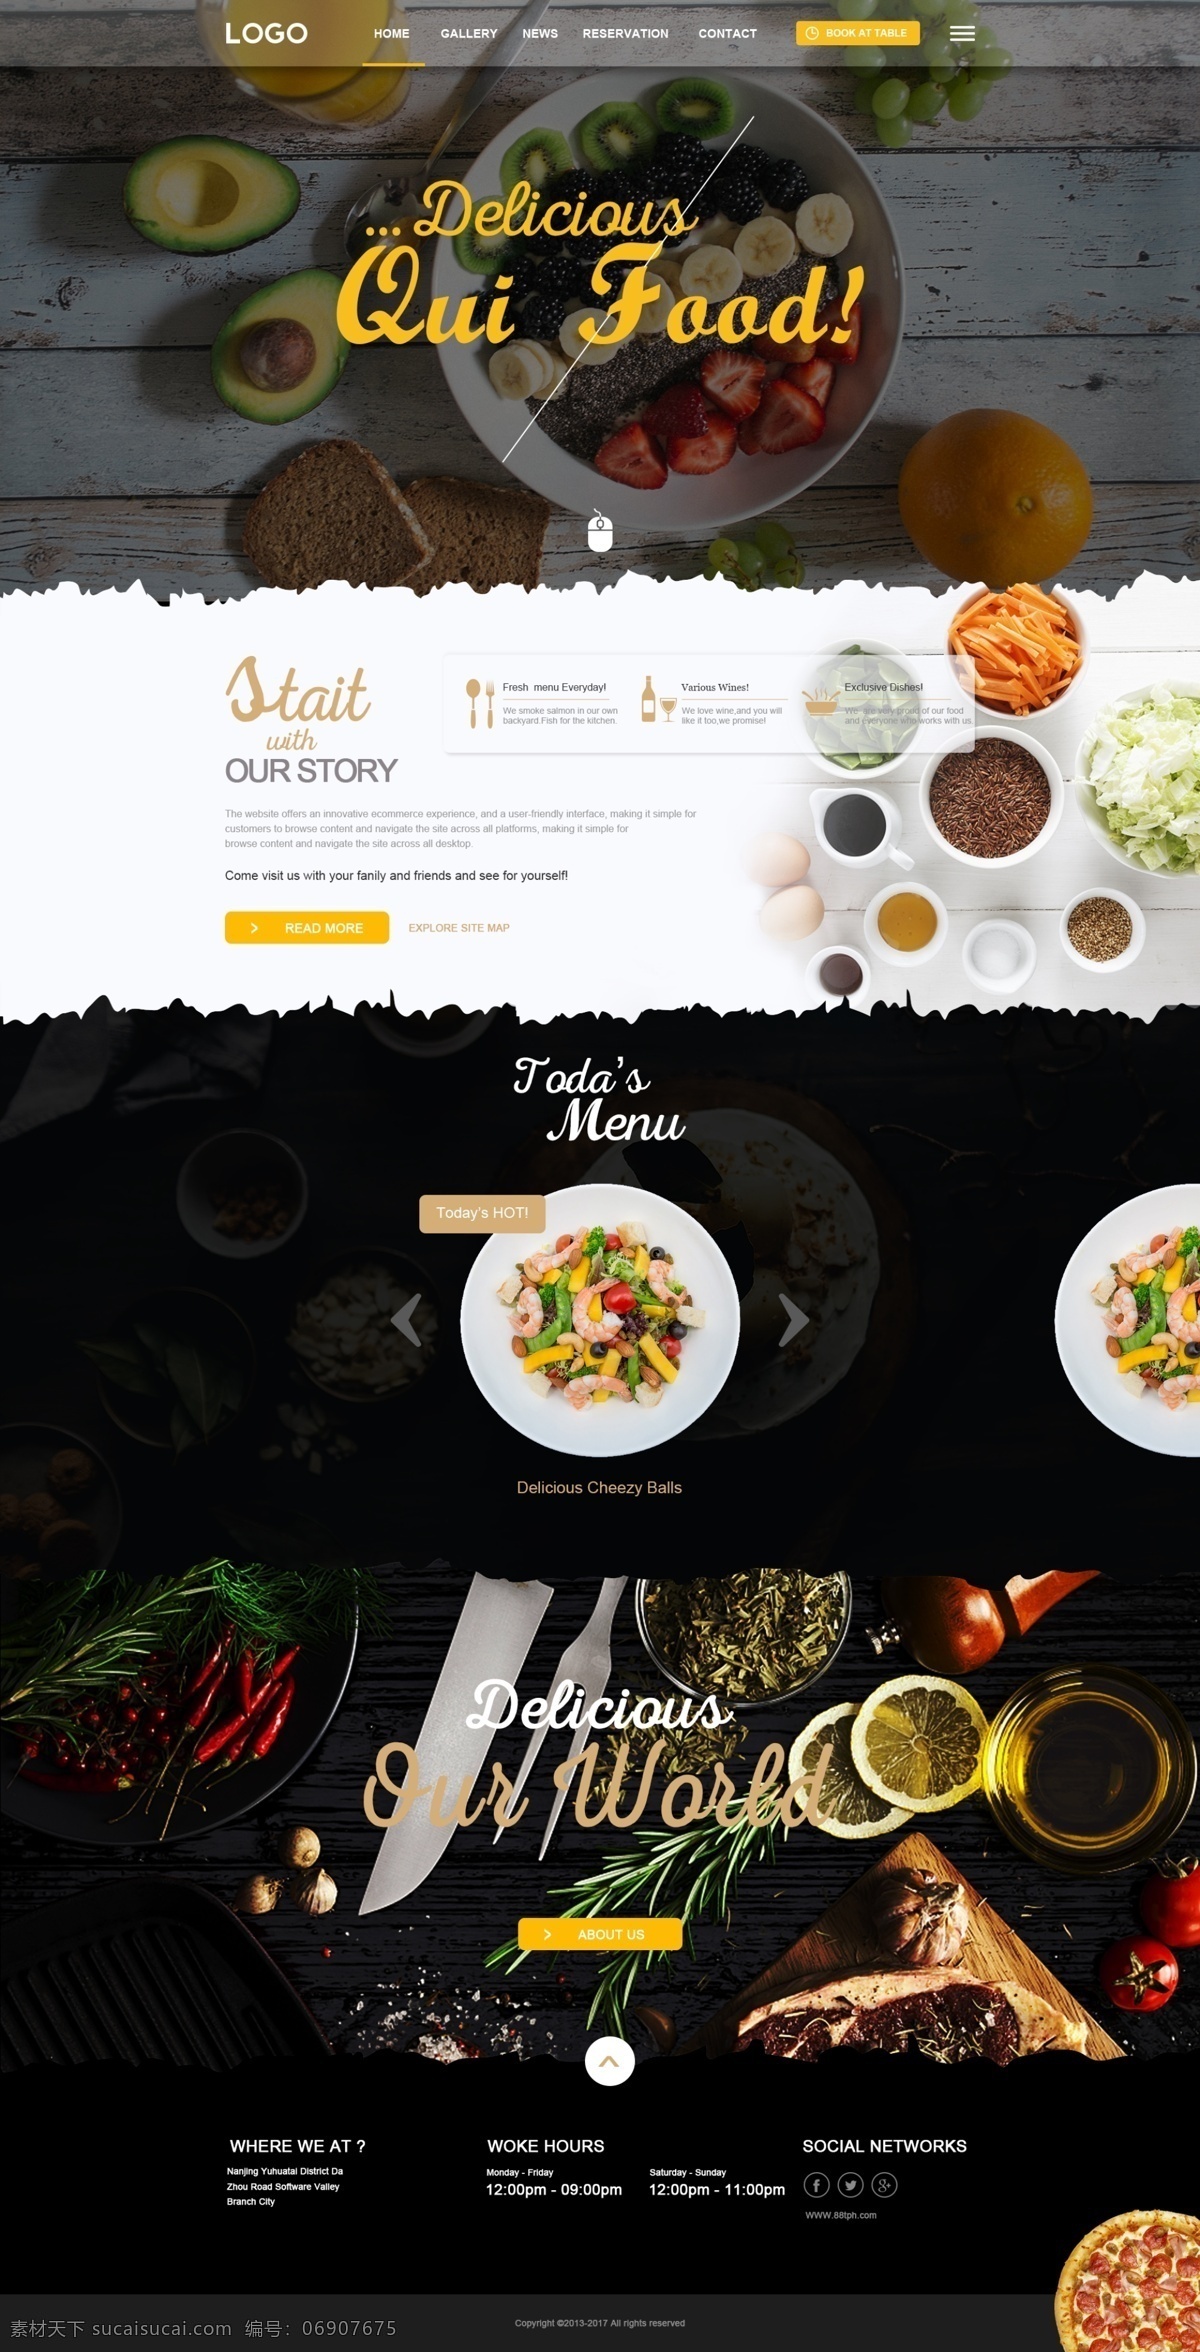 国外 美食 网页设计 美食网页设计 企业网站 网站设计 psd素材 web 界面设计 英文模板